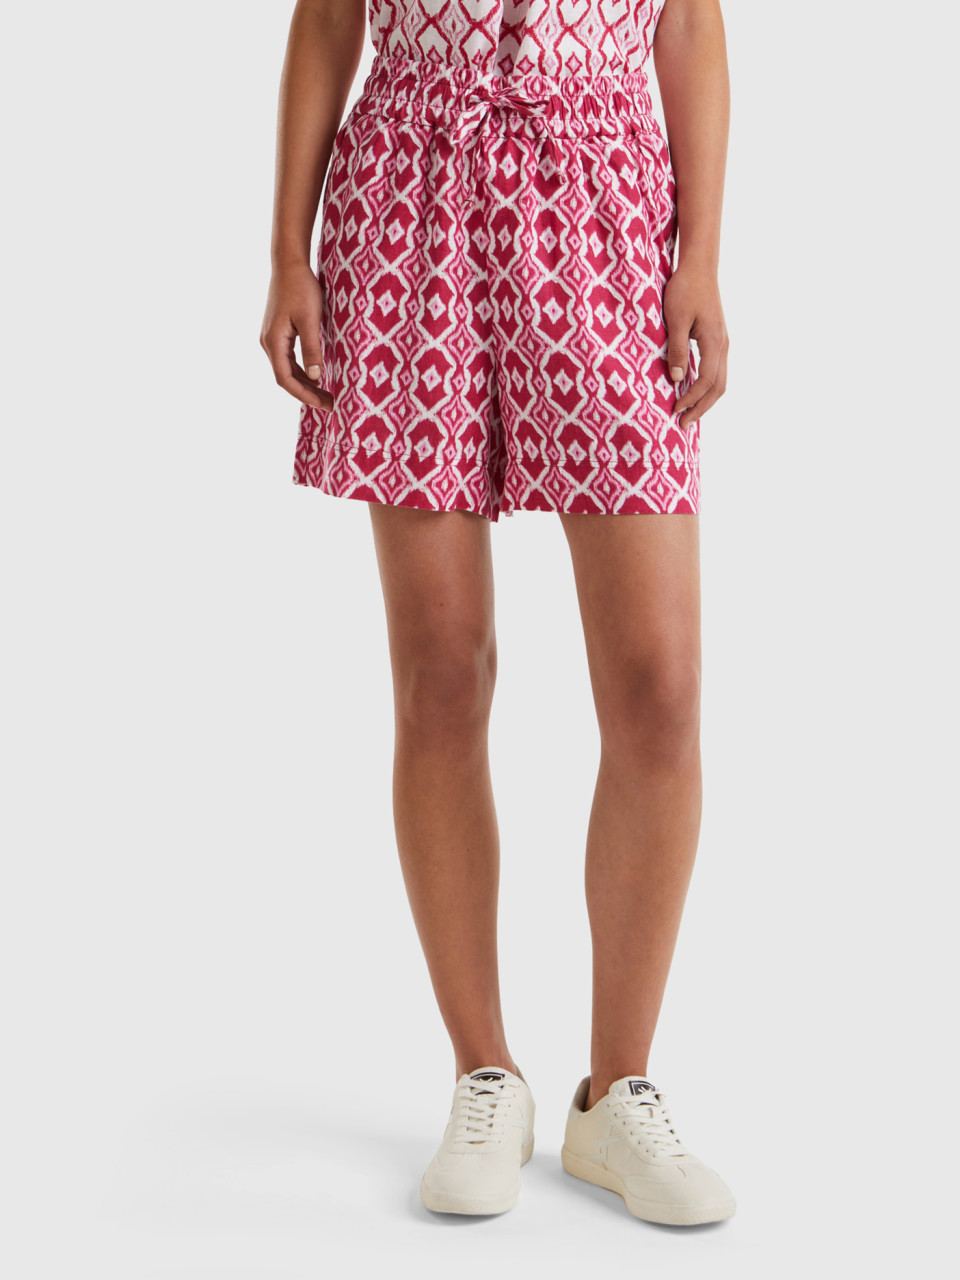 Benetton, Printed Linen Shorts, Cyclamen, Women